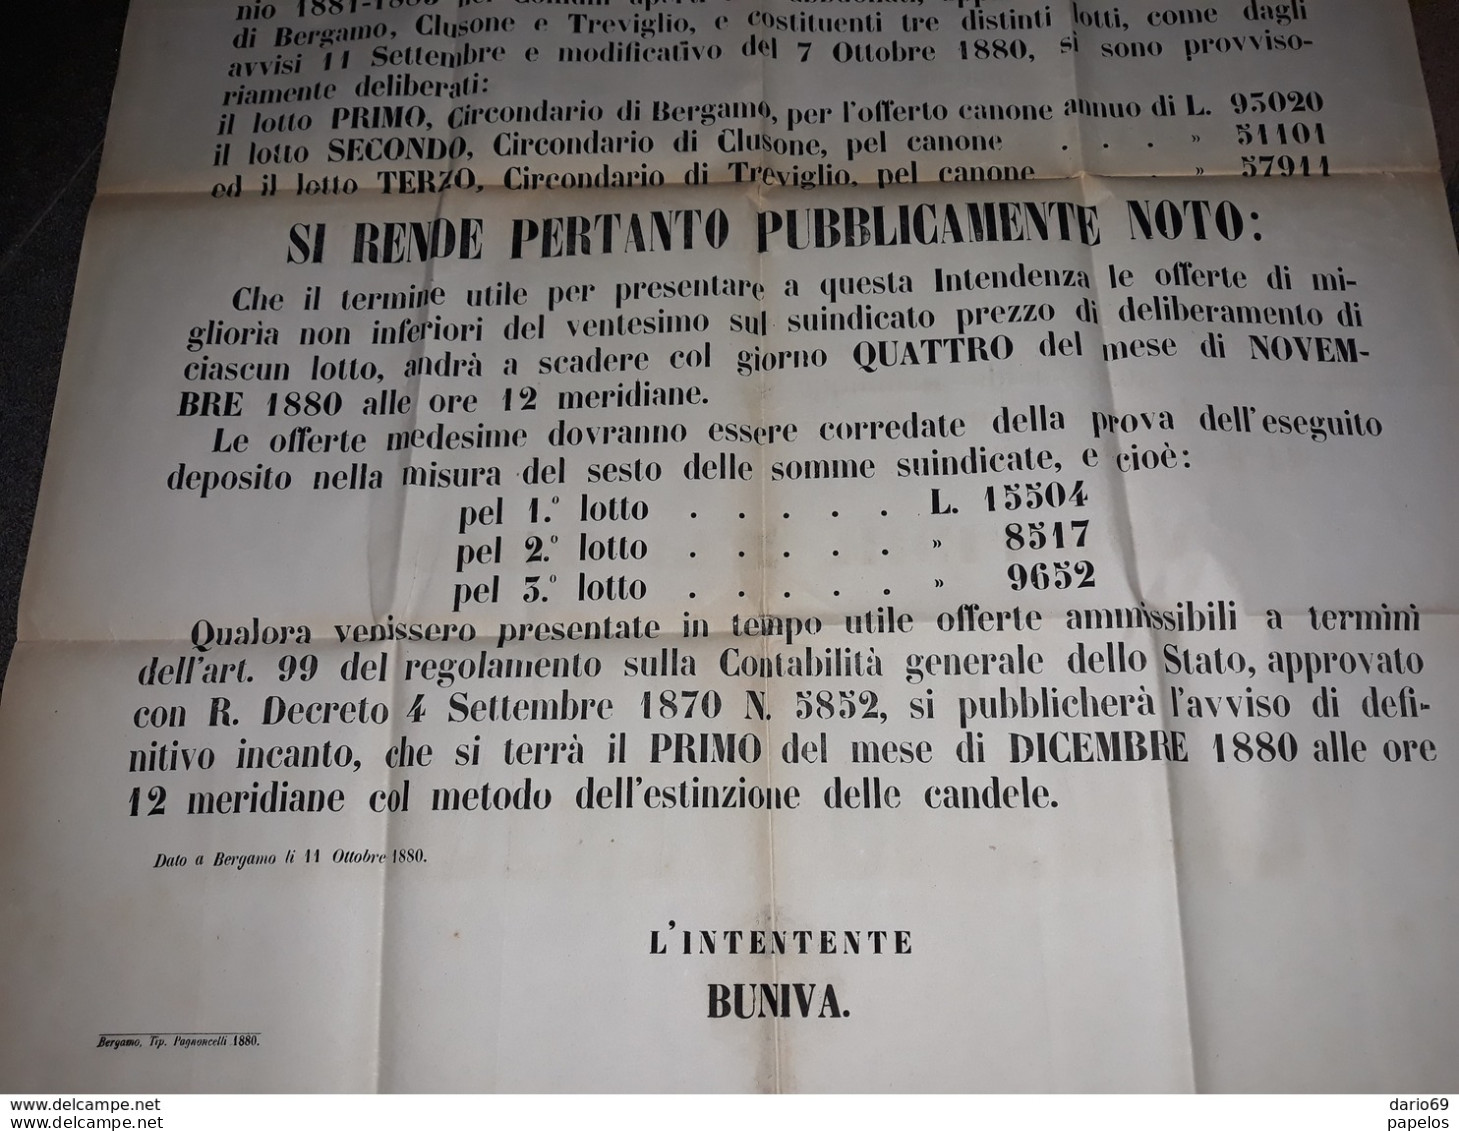 1880 MANIFESTO BERGAMO  AVVISO PER MIGLIORIA - Documents Historiques